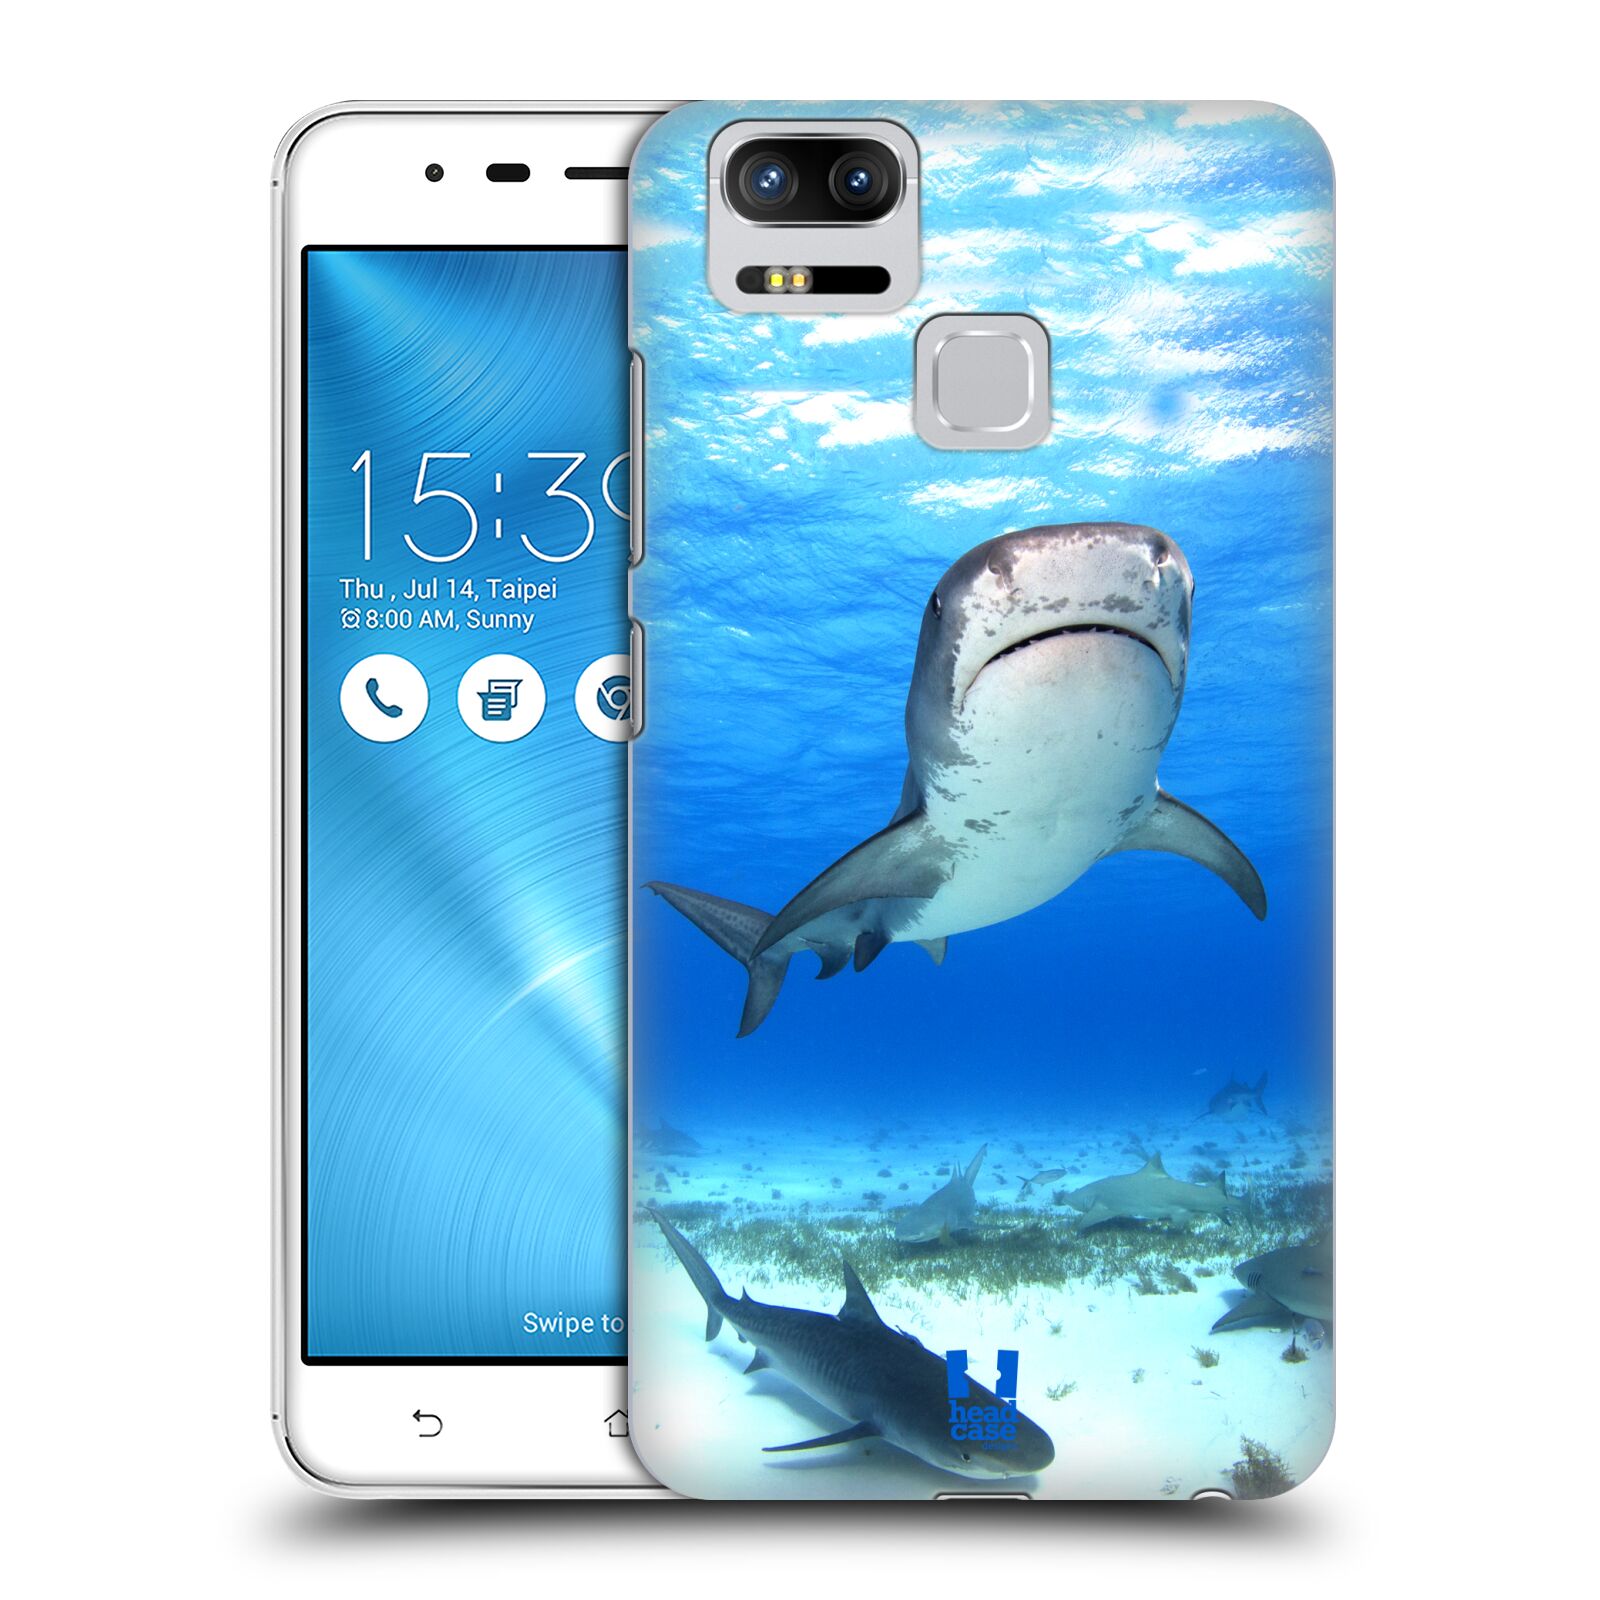 HEAD CASE plastový obal na mobil Asus Zenfone 3 Zoom ZE553KL vzor slavná zvířata foto žralok tygří